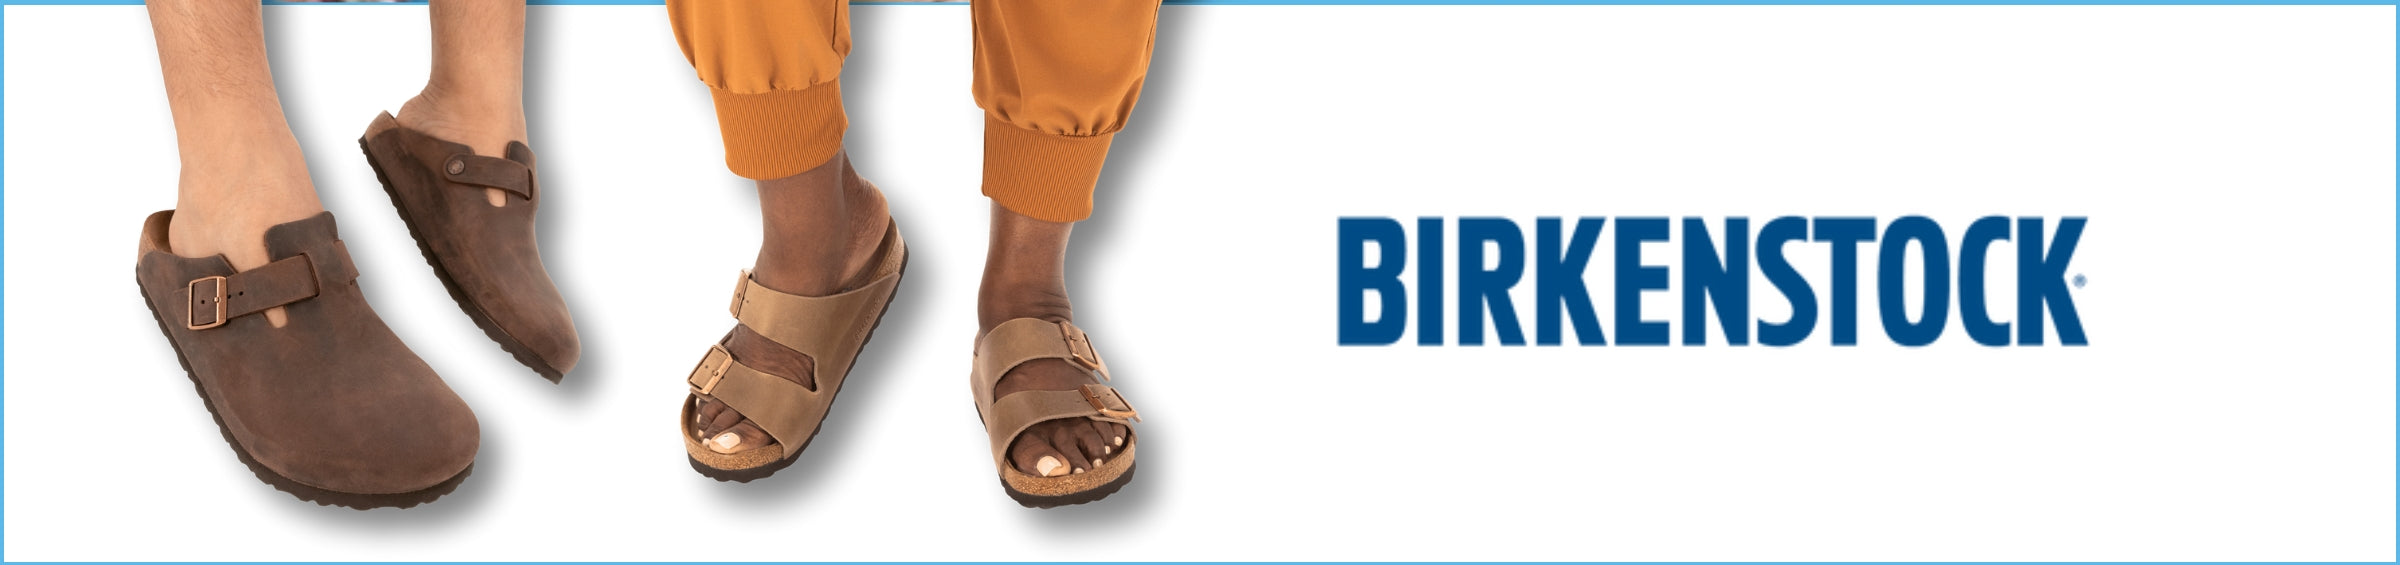 Birkenstock Sandals & Shoes